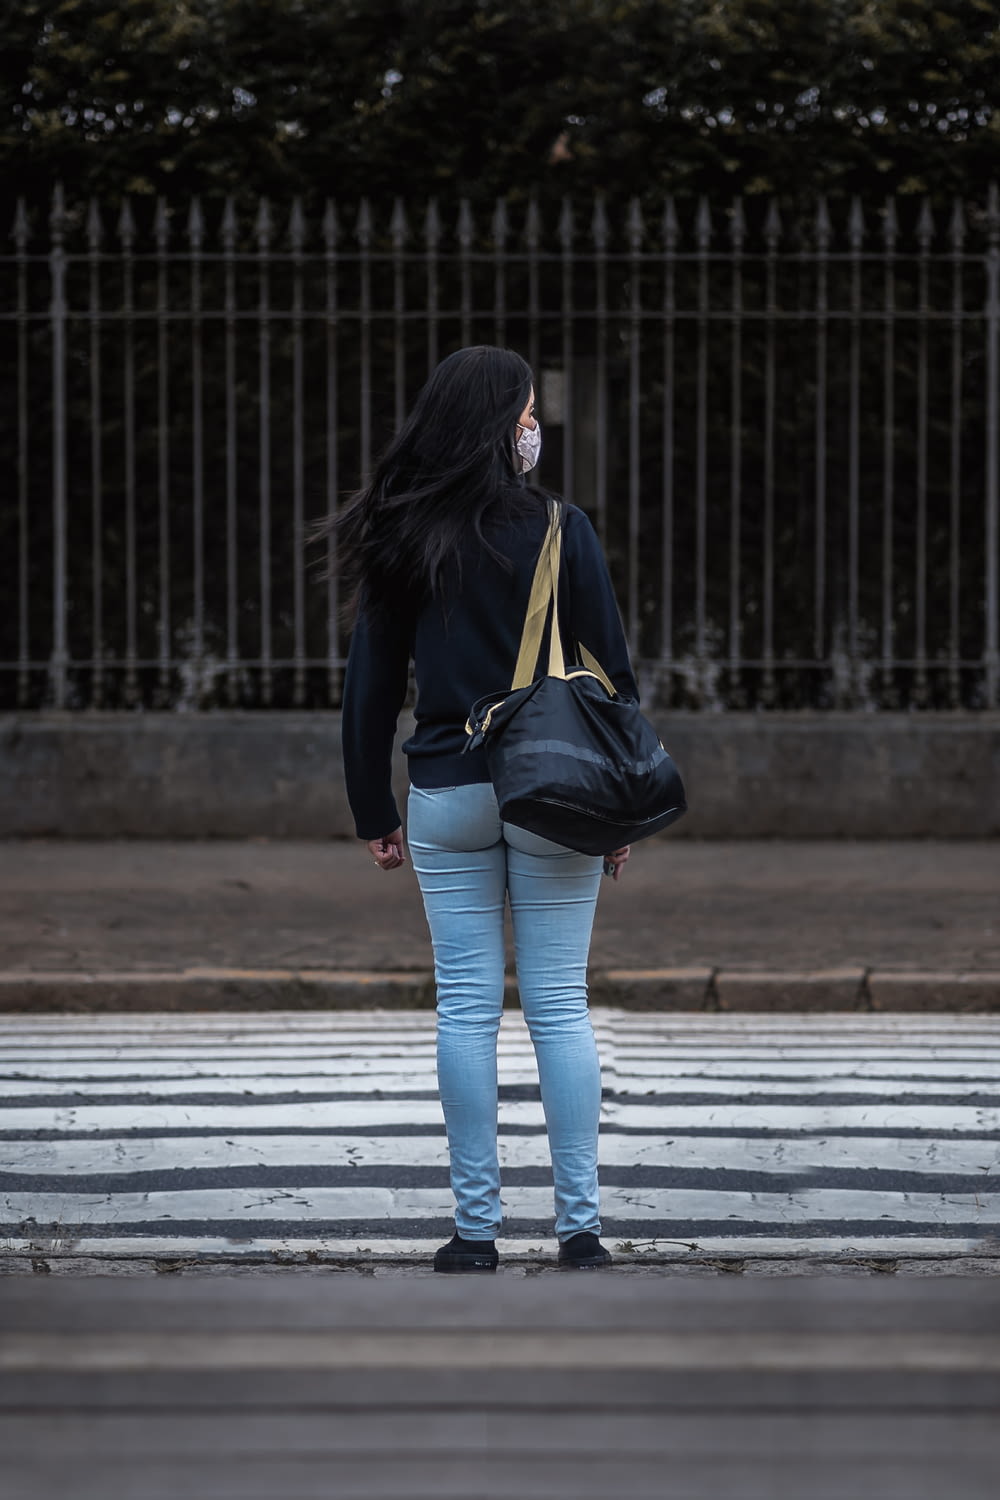 검은 가죽 재킷과 파란색 데님 청바지를 입은 여자가 낮 동안 보행자 차선을 걷고 있다